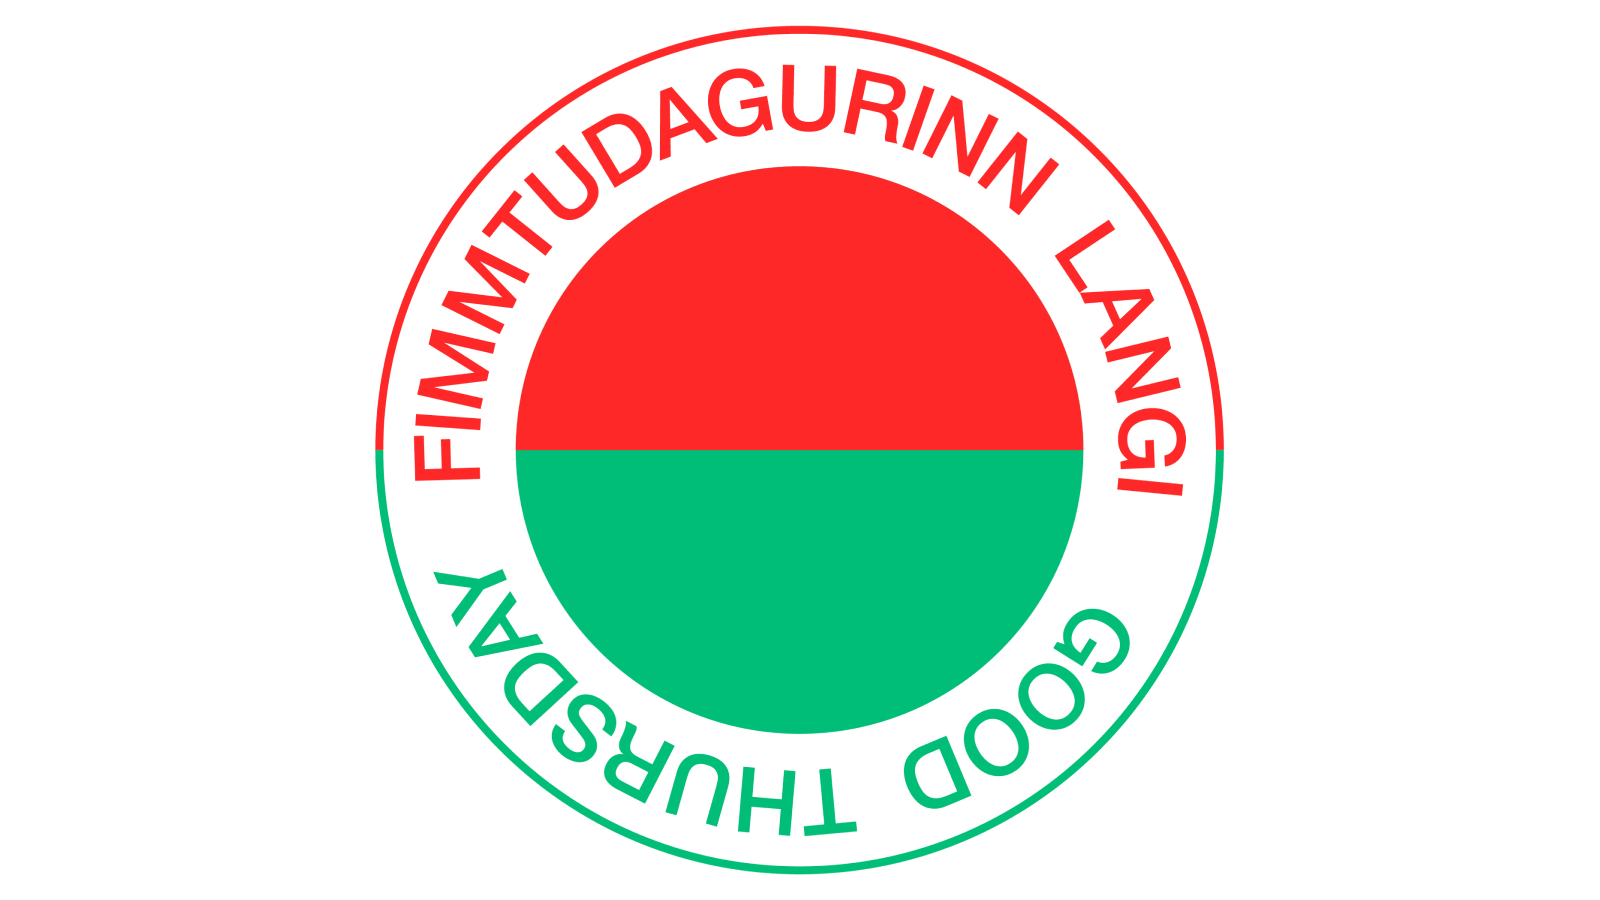 Fimm-langi-hringur-16_9